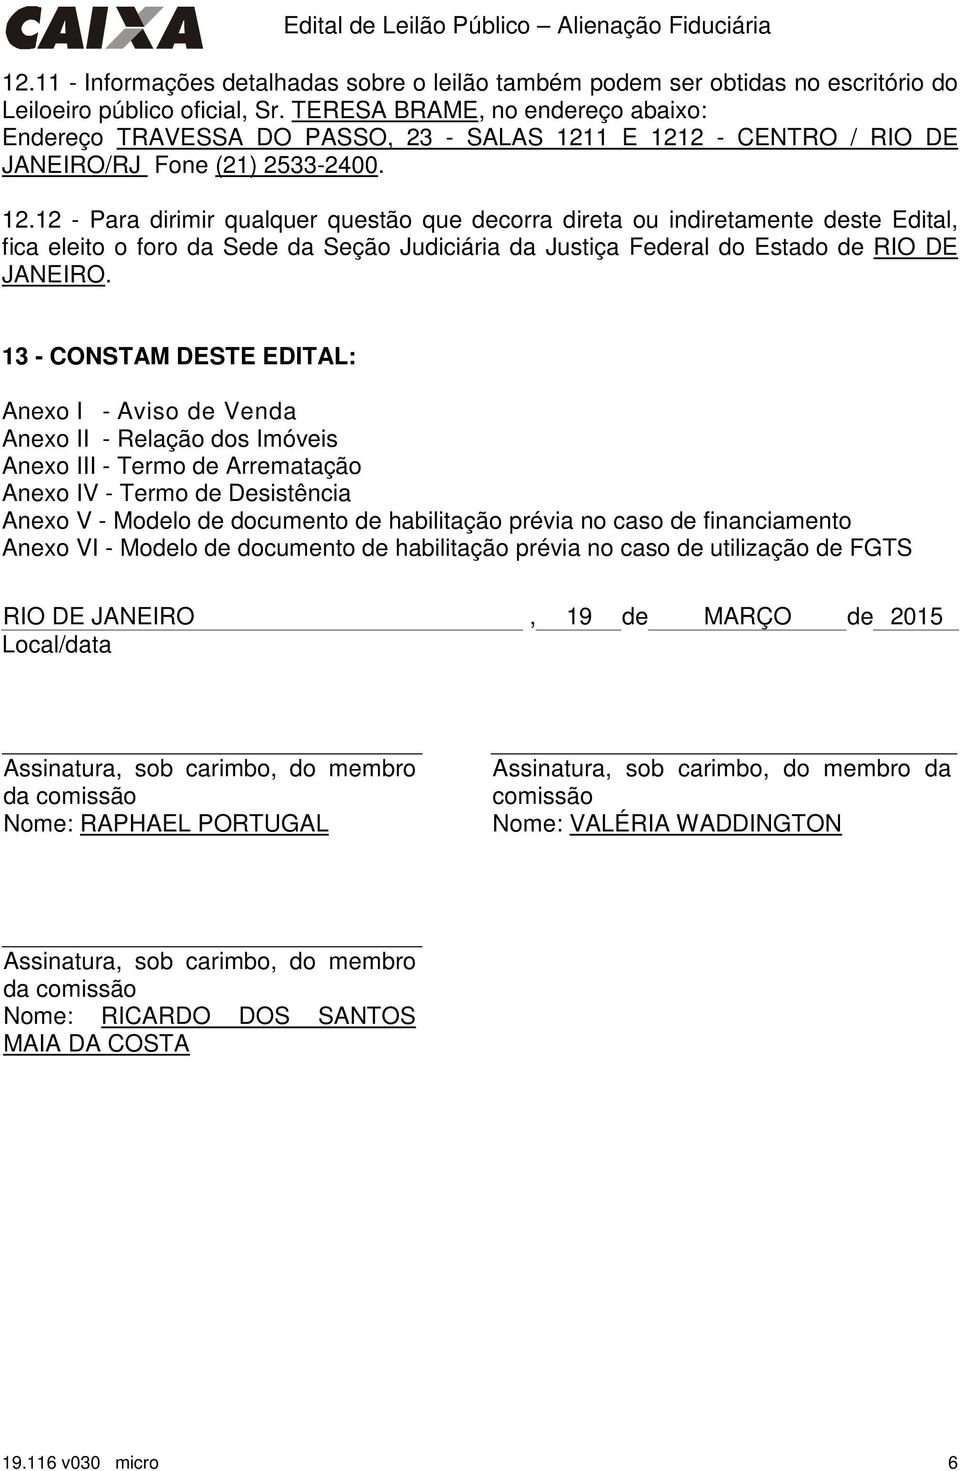 1 E 1212 - CENTRO / RIO DE JANEIRO/RJ Fone (21) 2533-2400. 12.12 - Para dirimir qualquer questão que decorra direta ou indiretamente deste Edital, fica eleito o foro da Sede da Seção Judiciária da Justiça Federal do RIO DE JANEIRO.